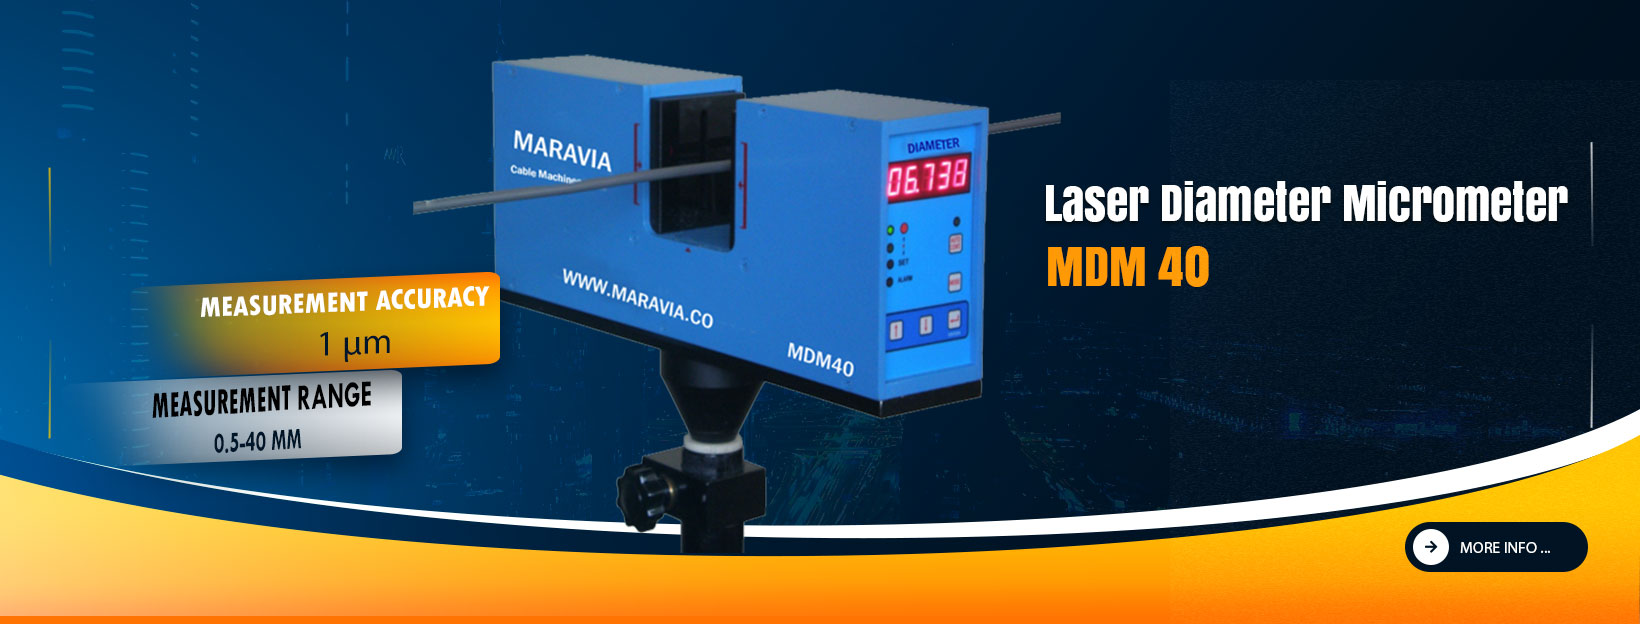 Laser Diameter Micrometer MDM40